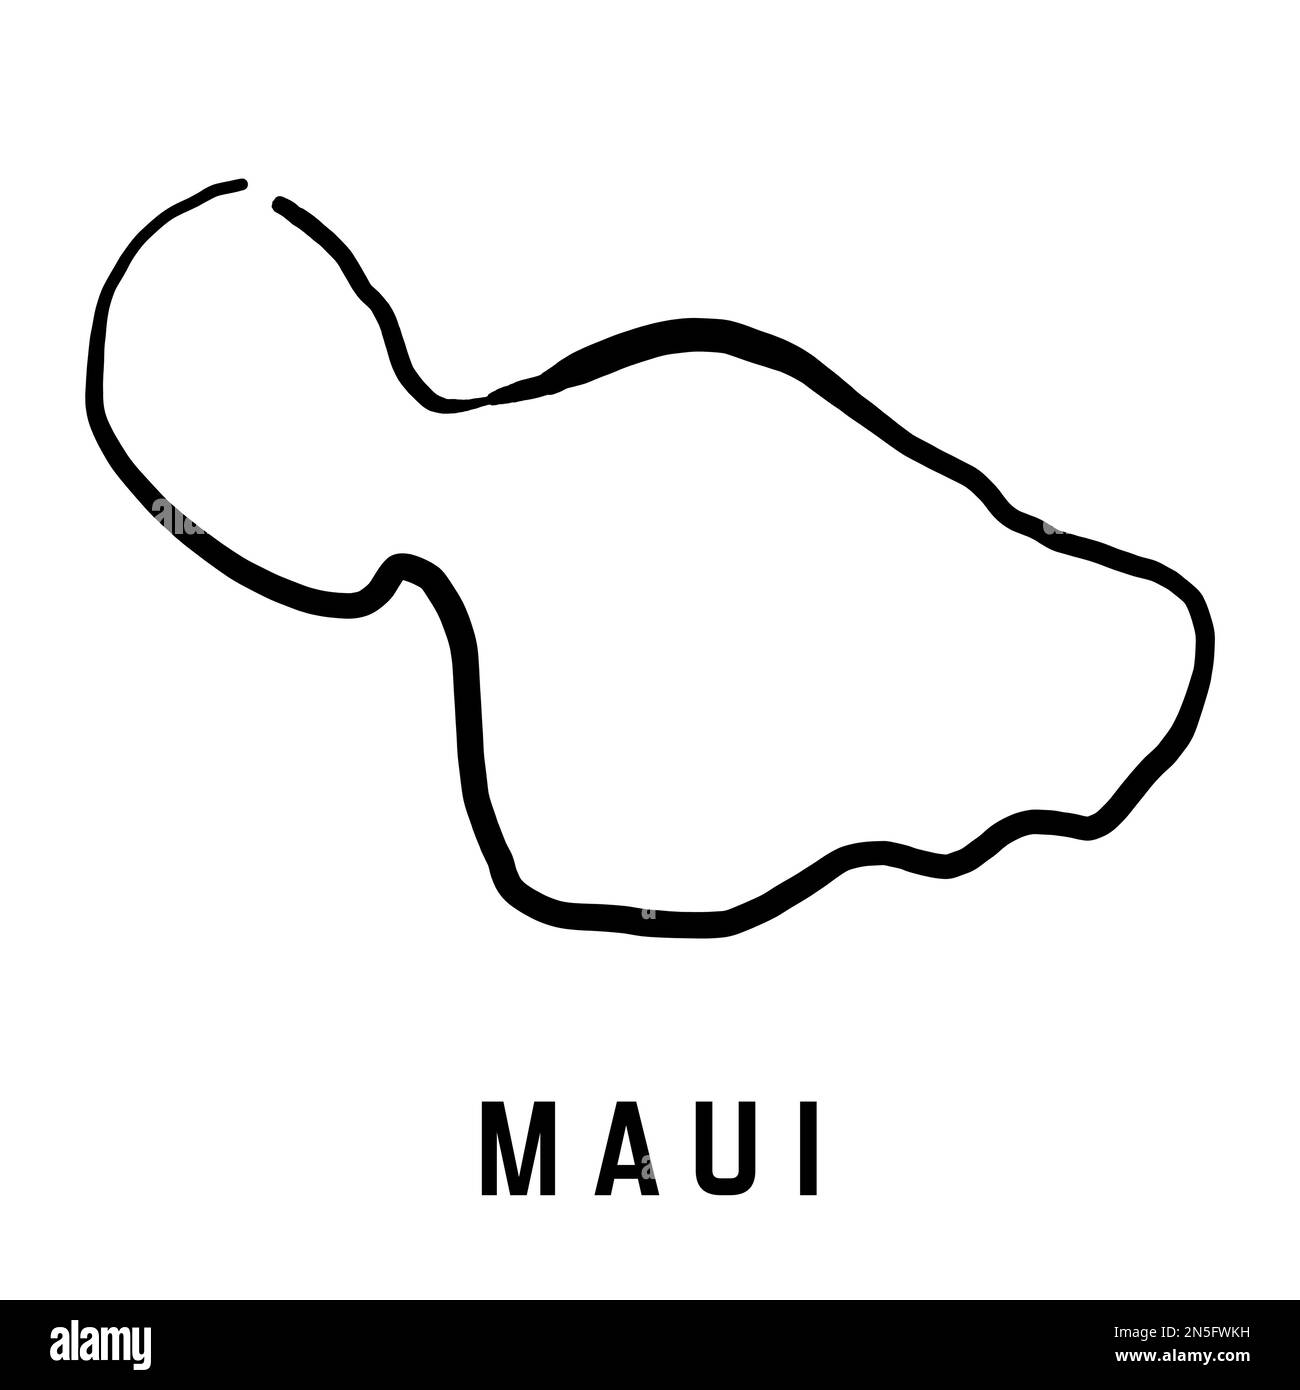 Maui-Inselkarte von Hawaii. Einfacher Umriss. Vektor handgezeichnete vereinfachte Stilkarte. Stock Vektor